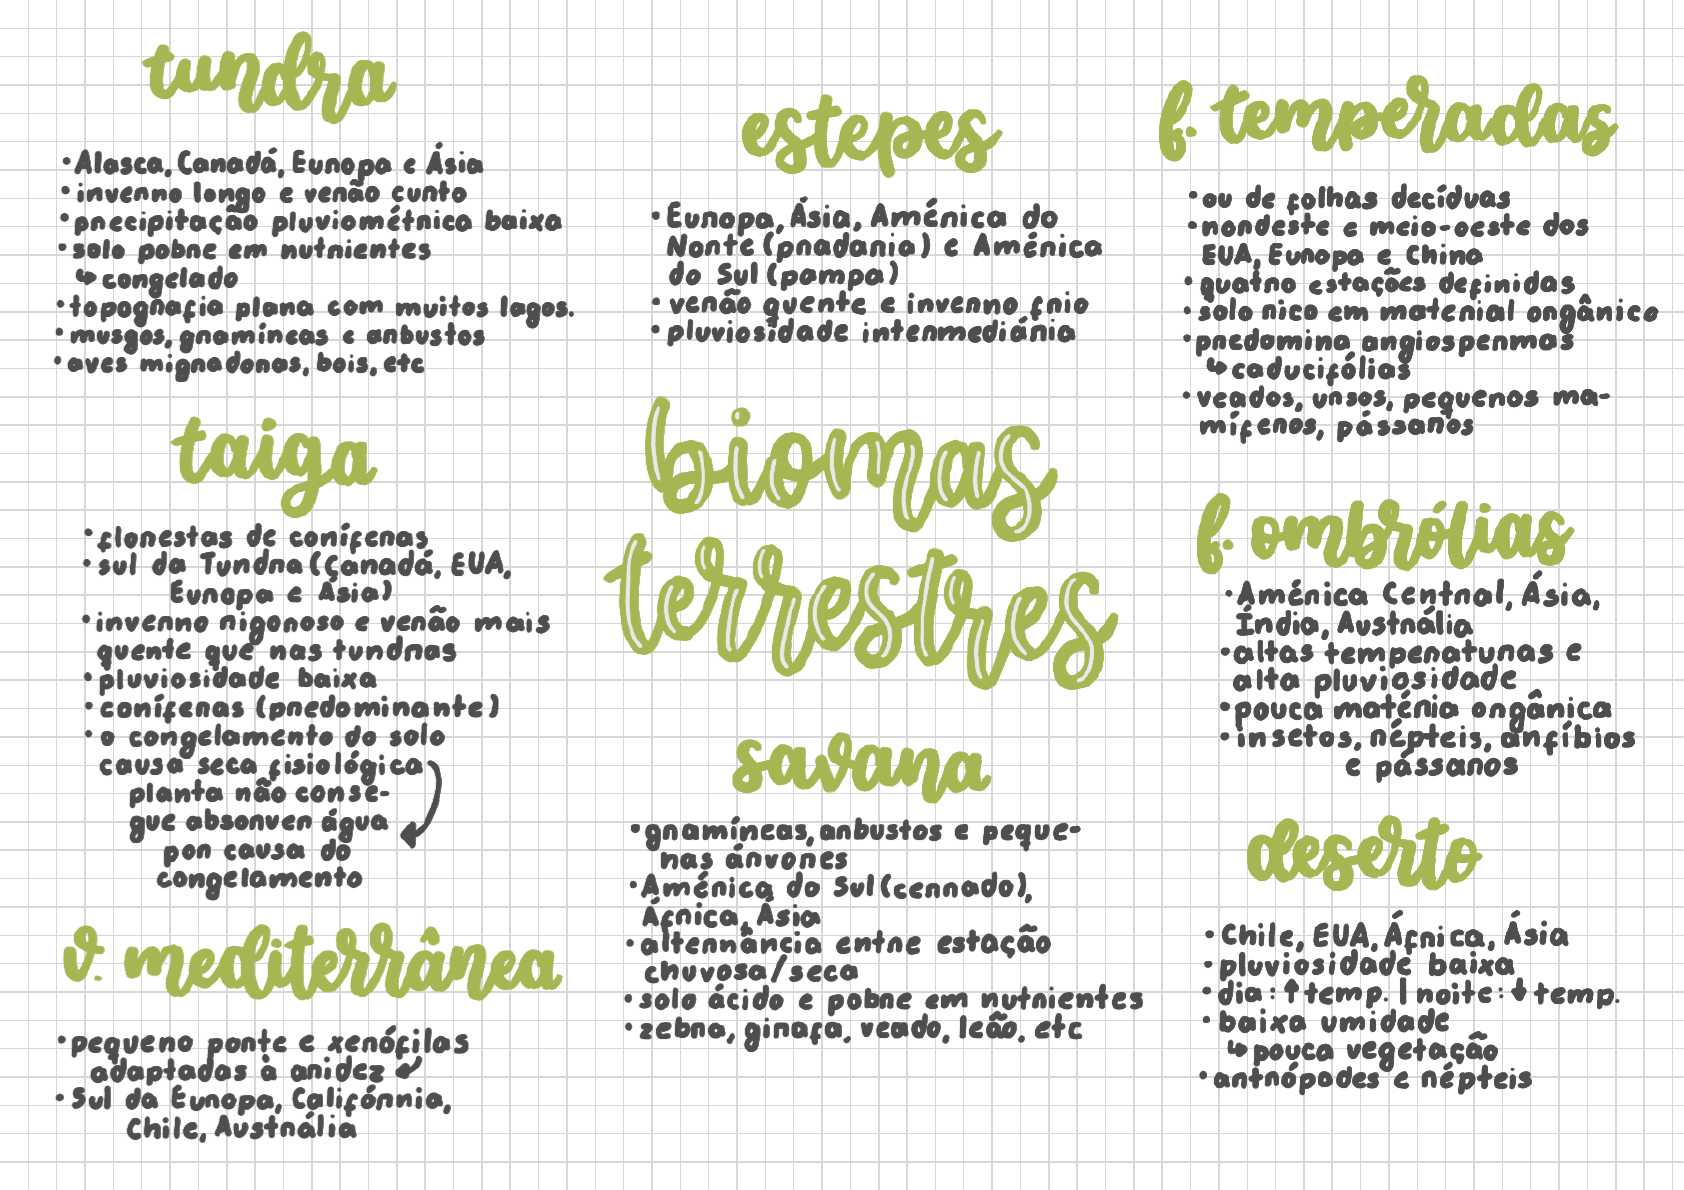 Biomas Terrestres Resumo De Biomas Do Mundo E Biomas Do Brasil Docsity Images 2410